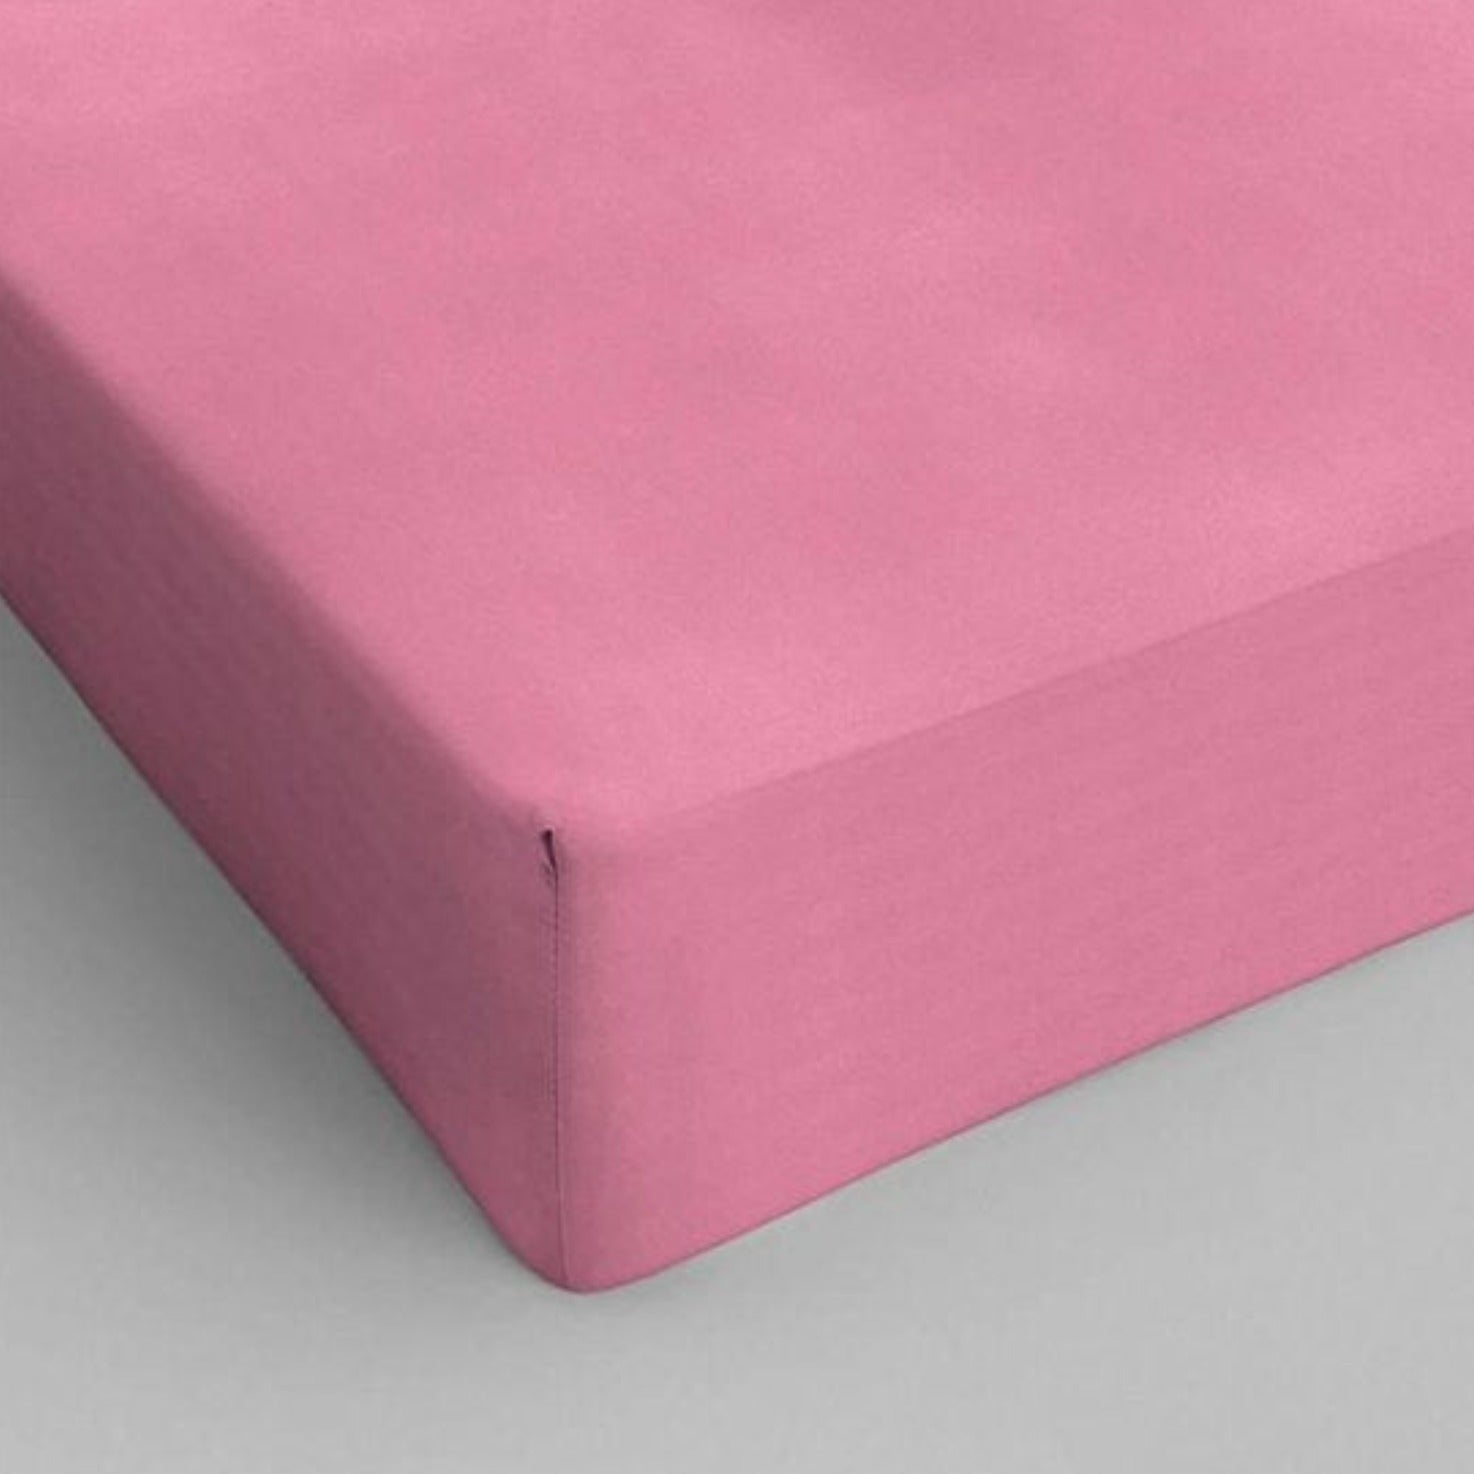 Stræklagen i bomuld pink 140 x 200